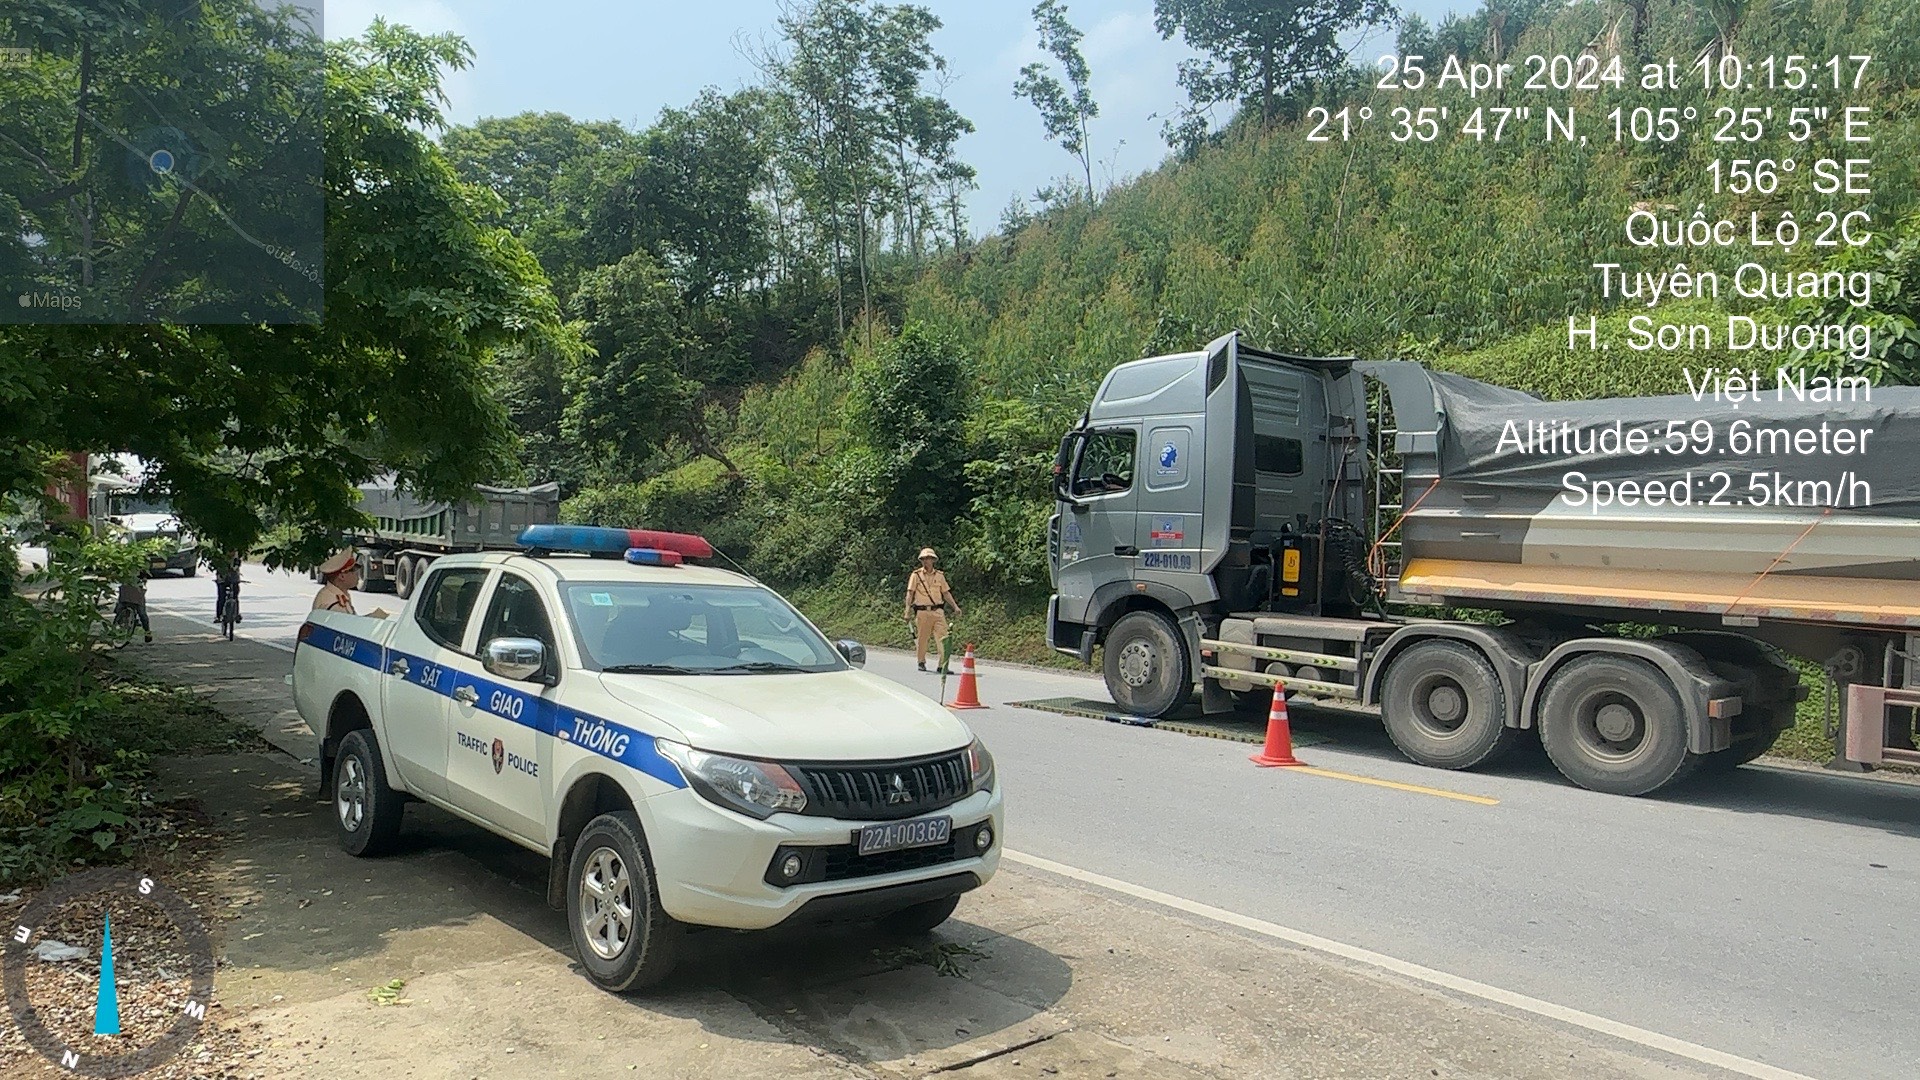 Mỏ đá tiếp tay cho xe quá tải ở Tuyên Quang: Lực  lượng chức năng xử lý ra sao?- Ảnh 1.